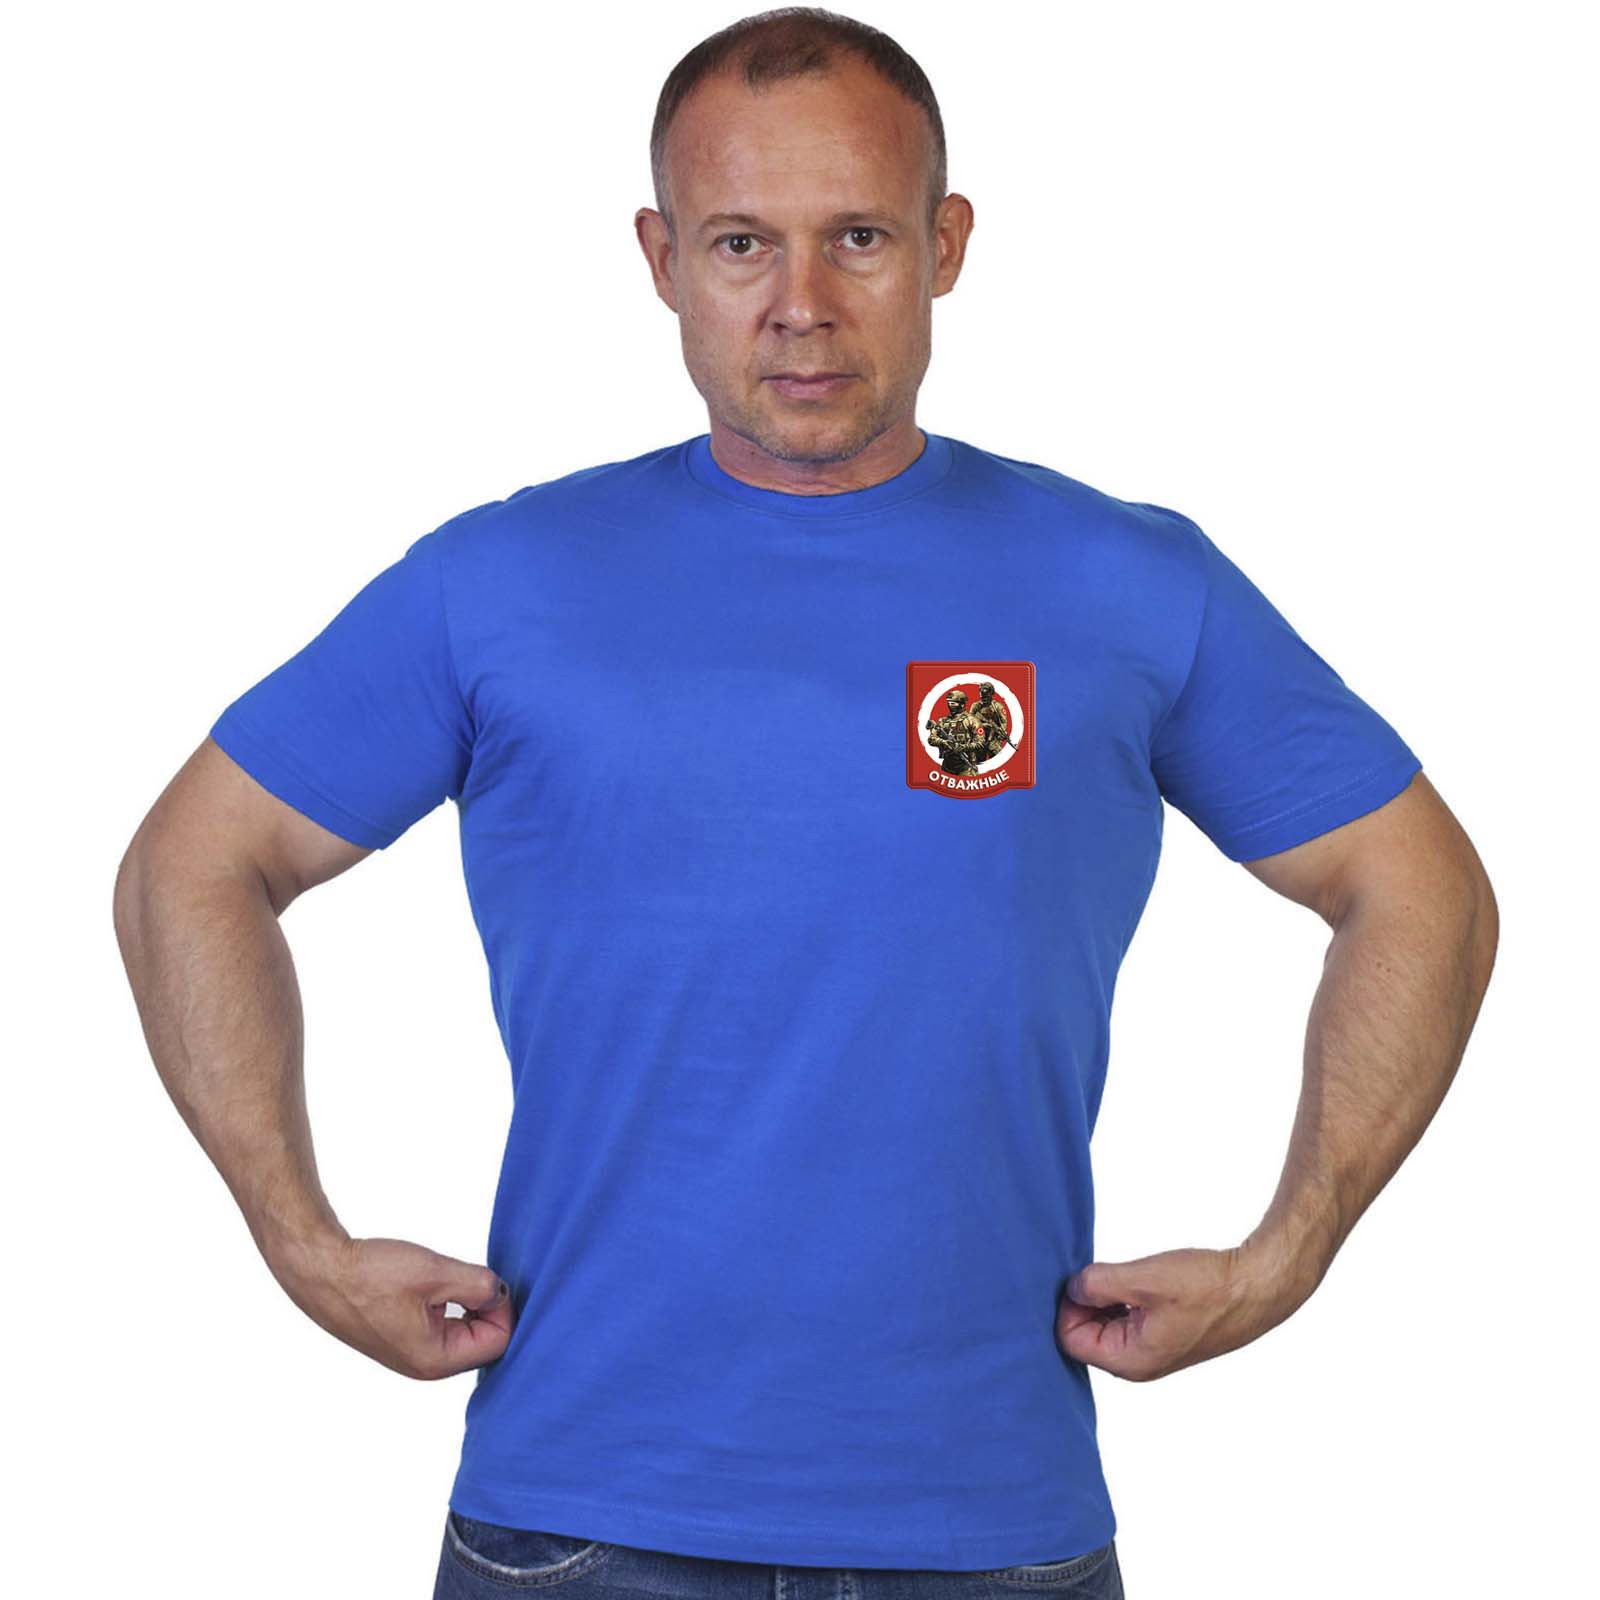 Васильковая футболка с термотрансфером "Отважные"